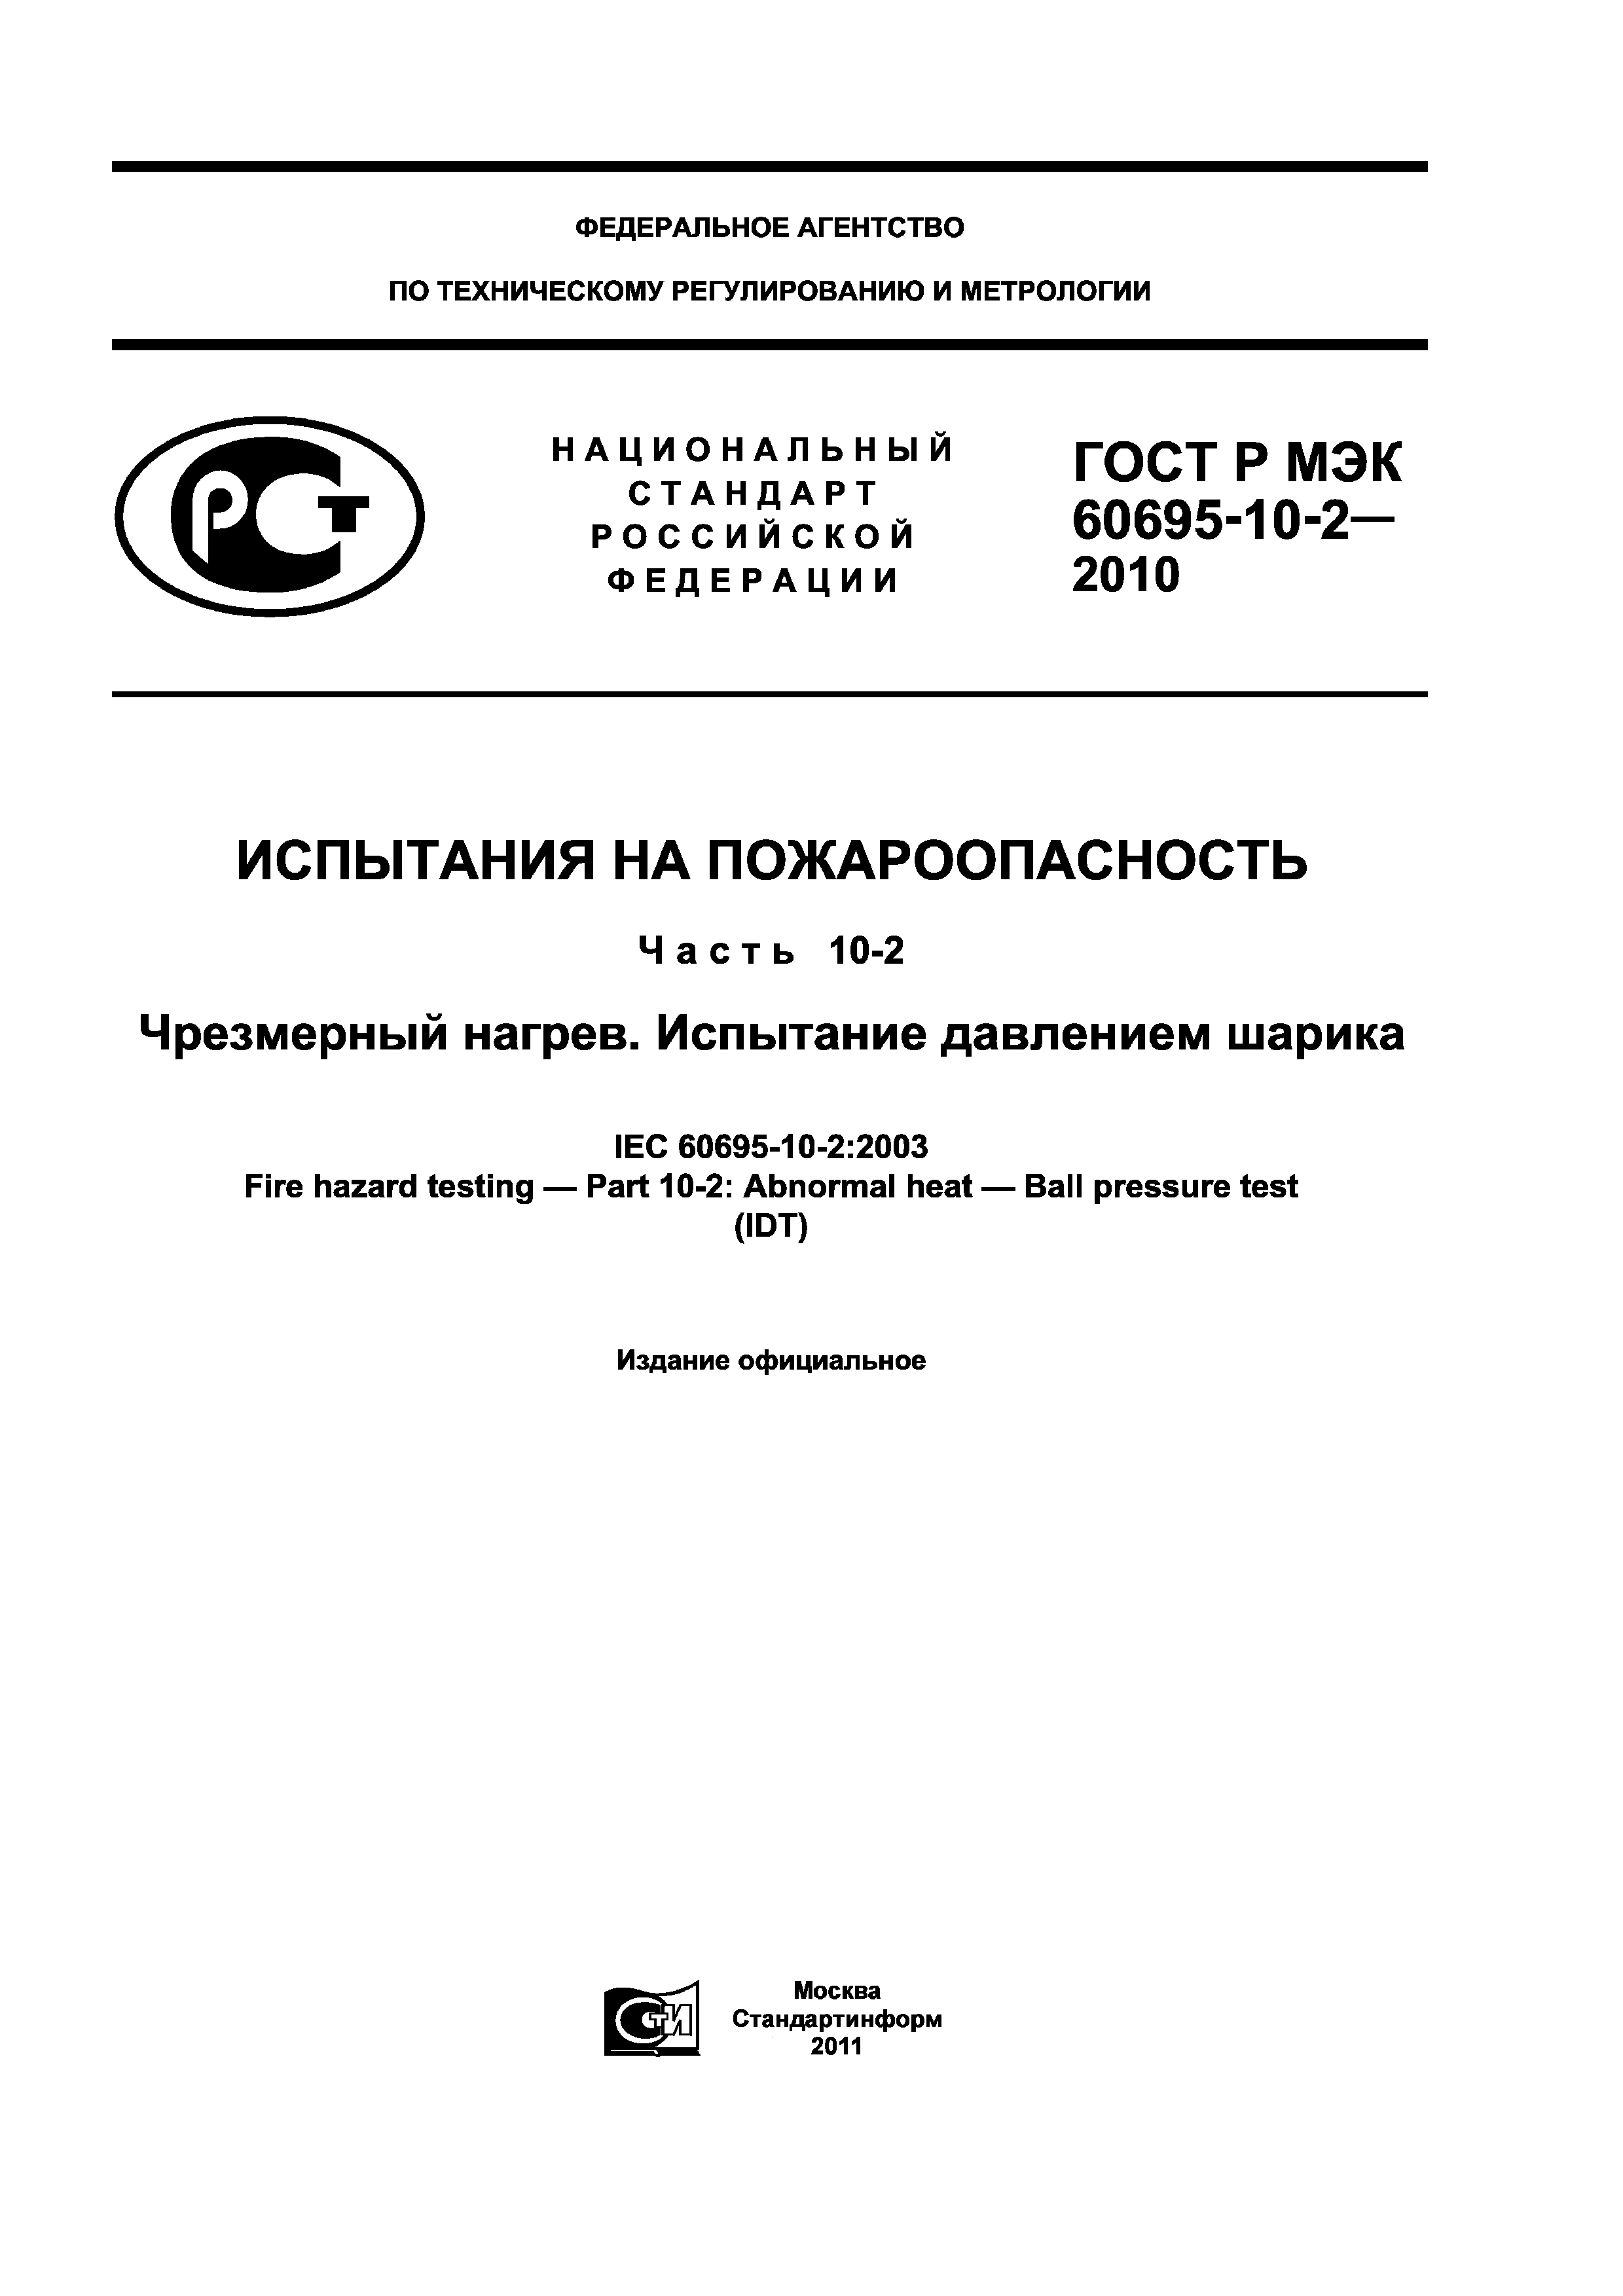 ГОСТ Р МЭК 60695-10-2-2010